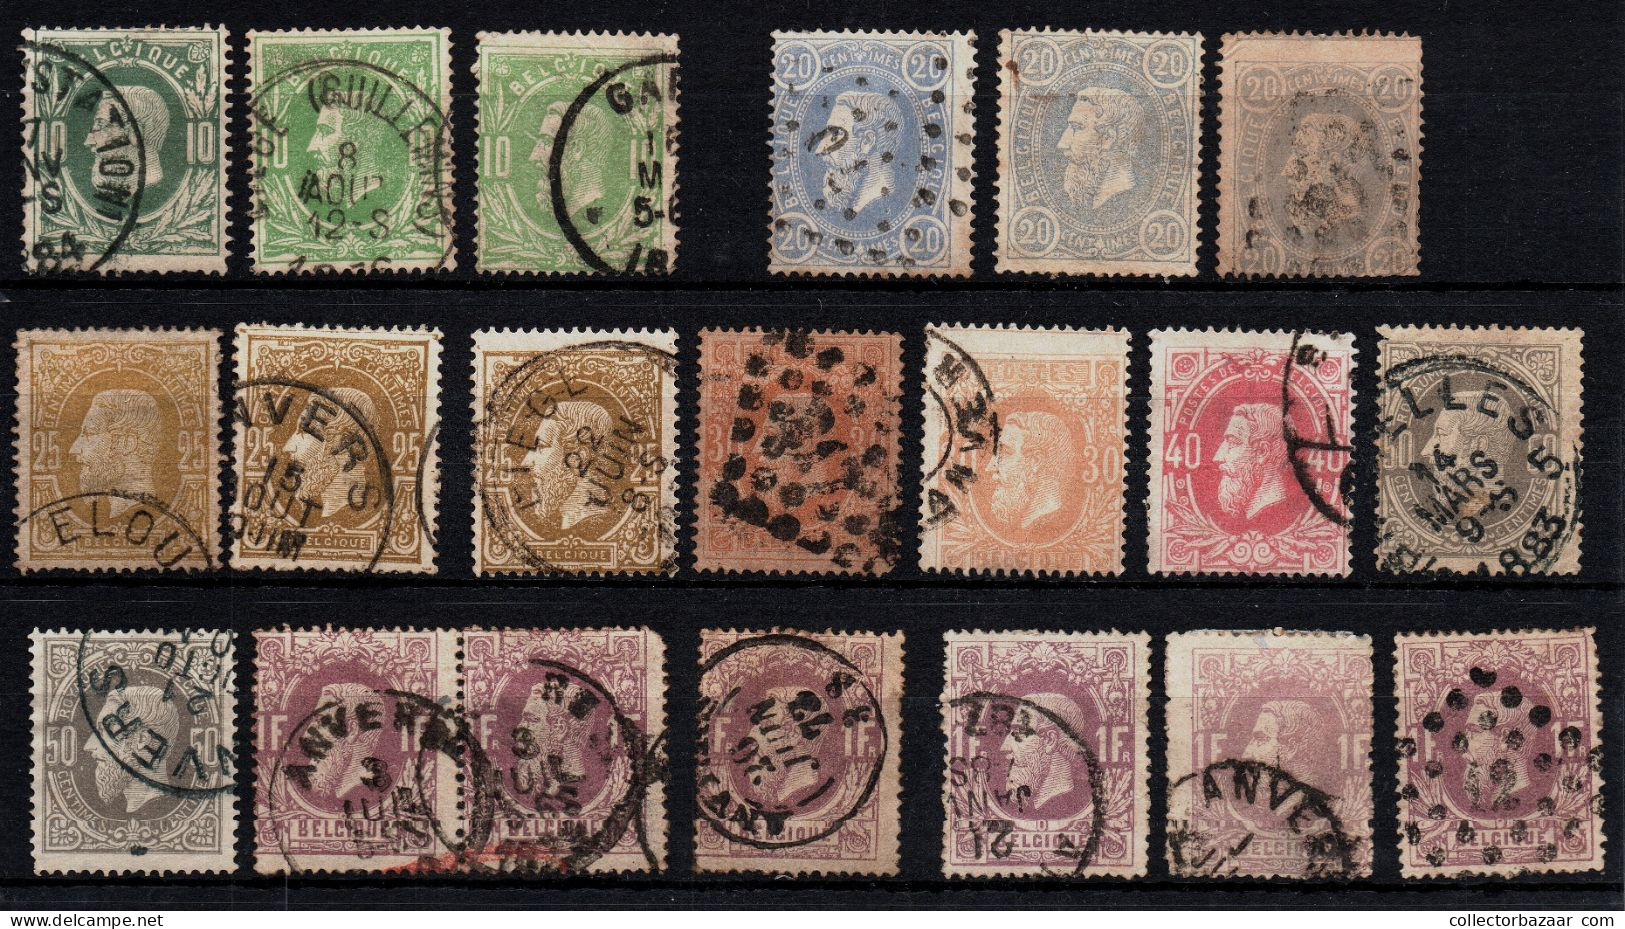 Belgium Belgique Used Key Stamps Postmarks Varieties SOTN Catalogue Value +$1200 - Sammlungen